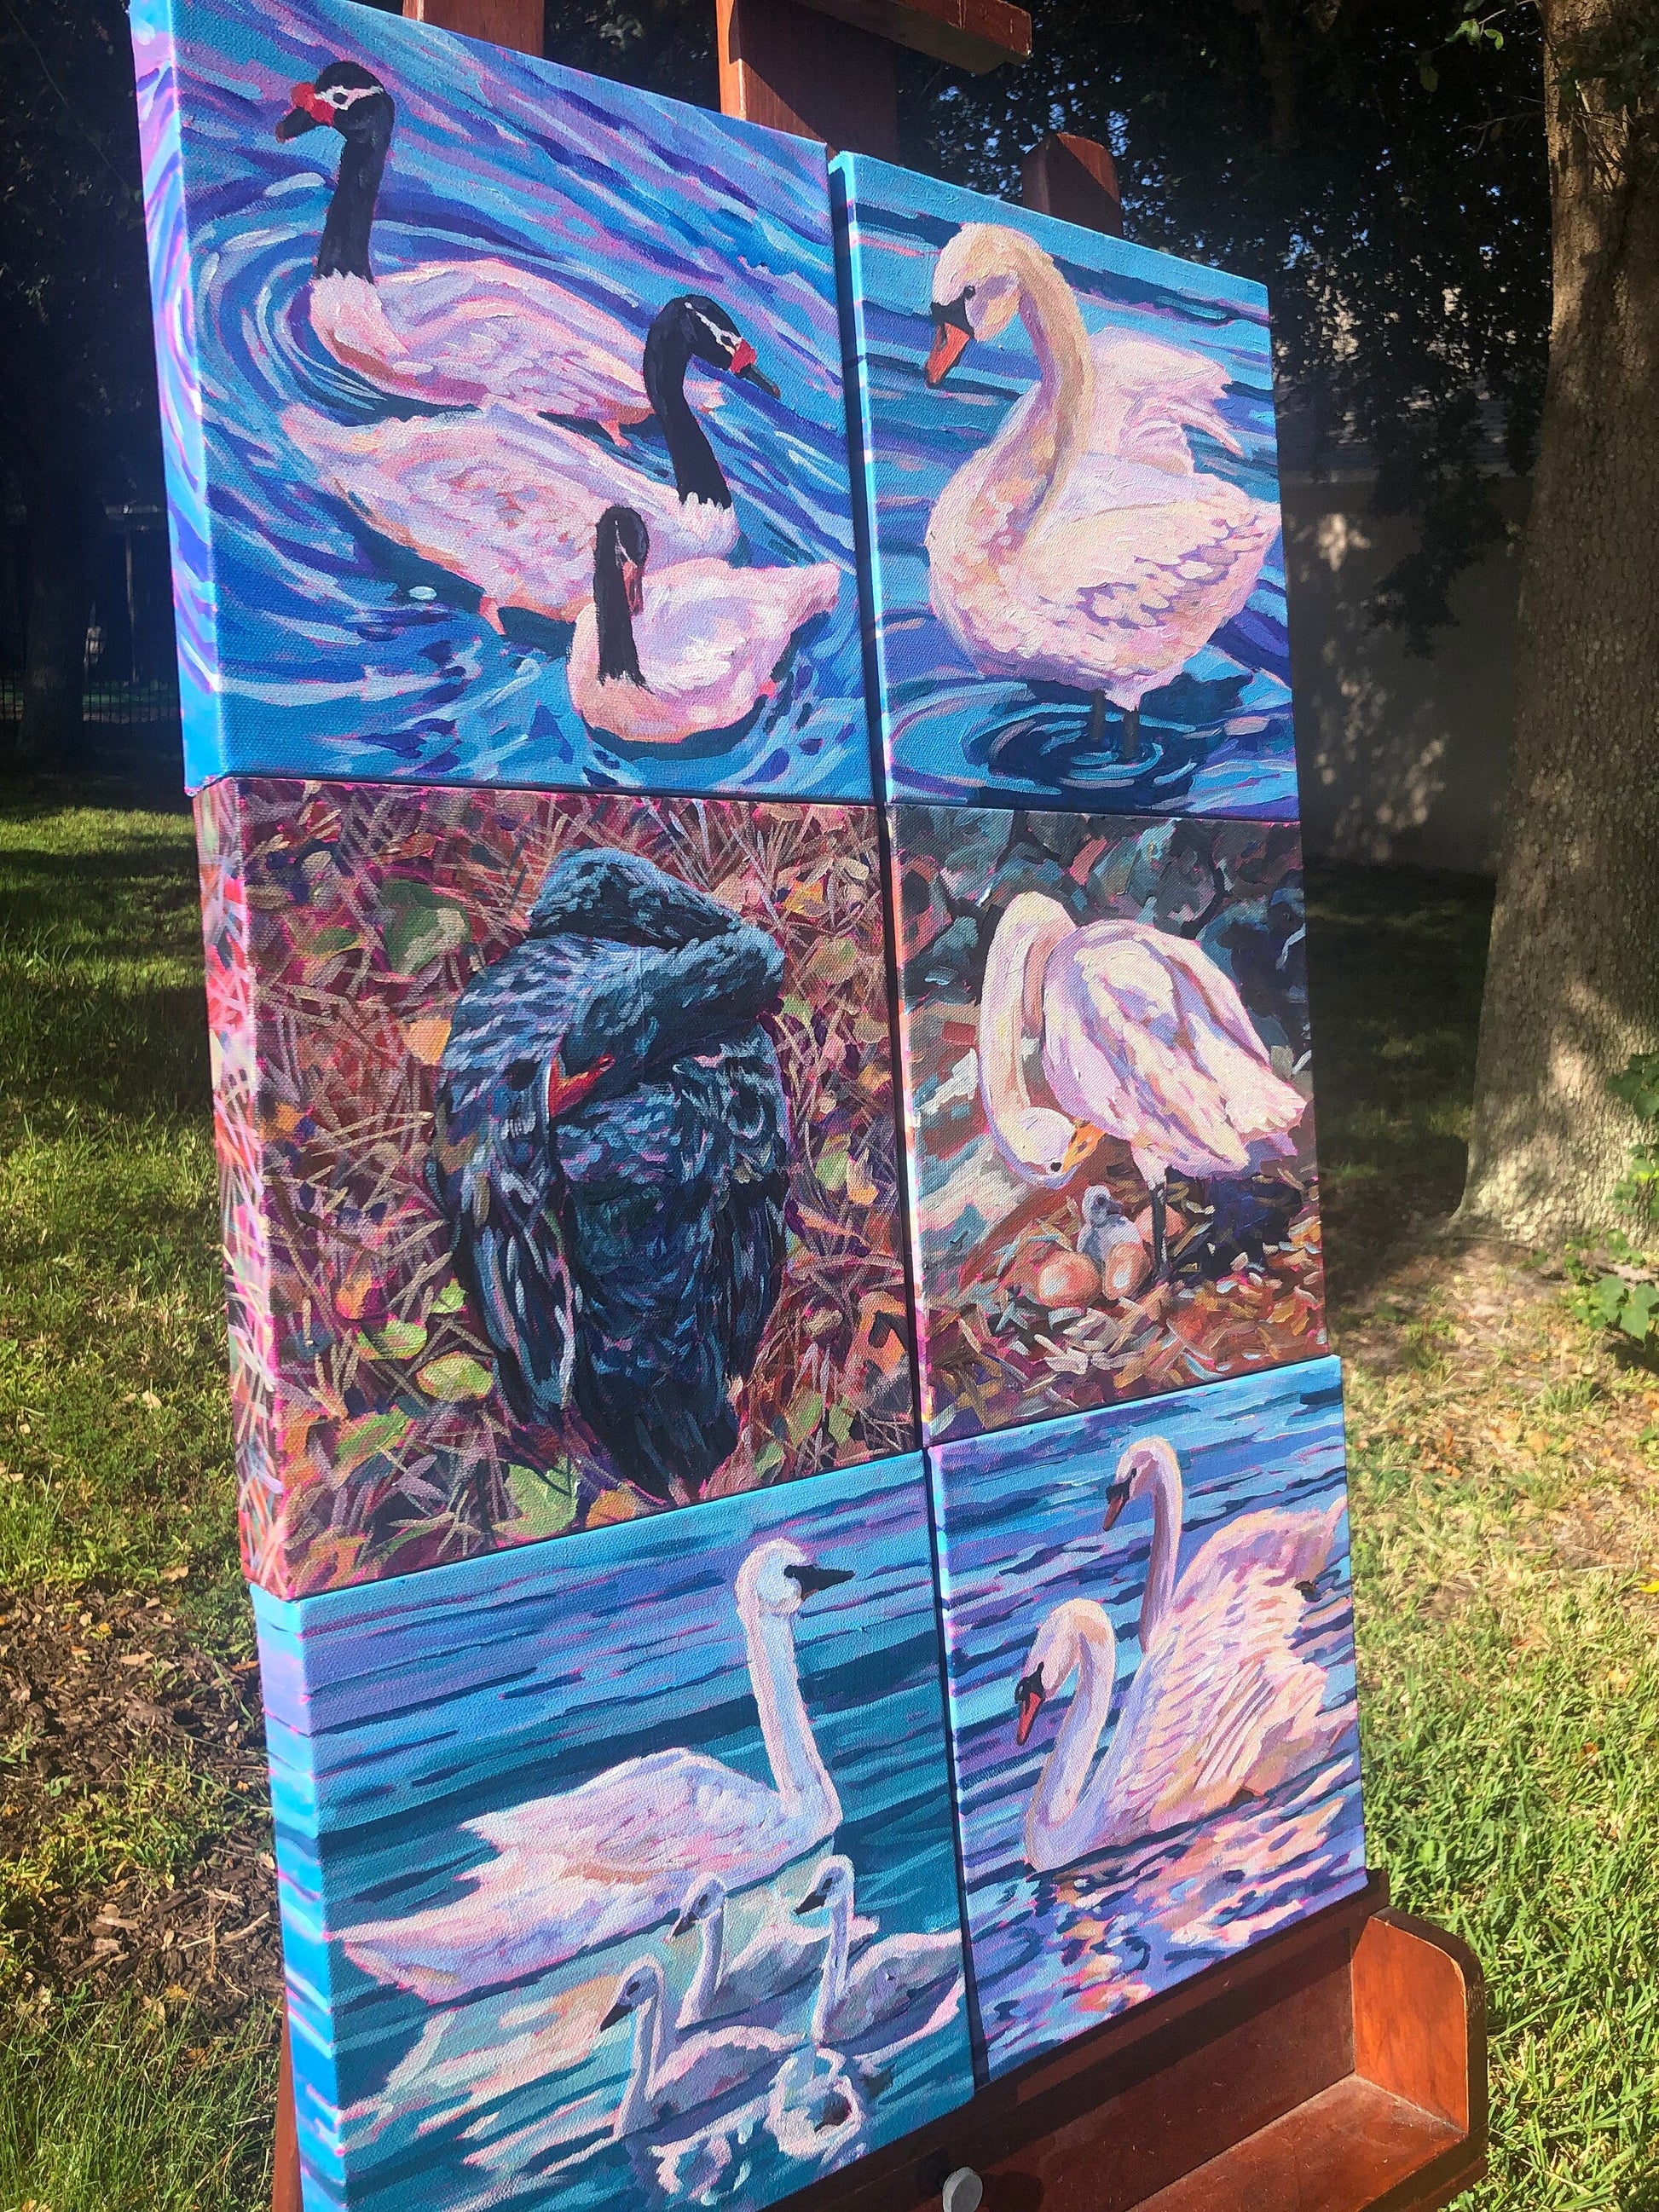 6 swan paintings on easel outside